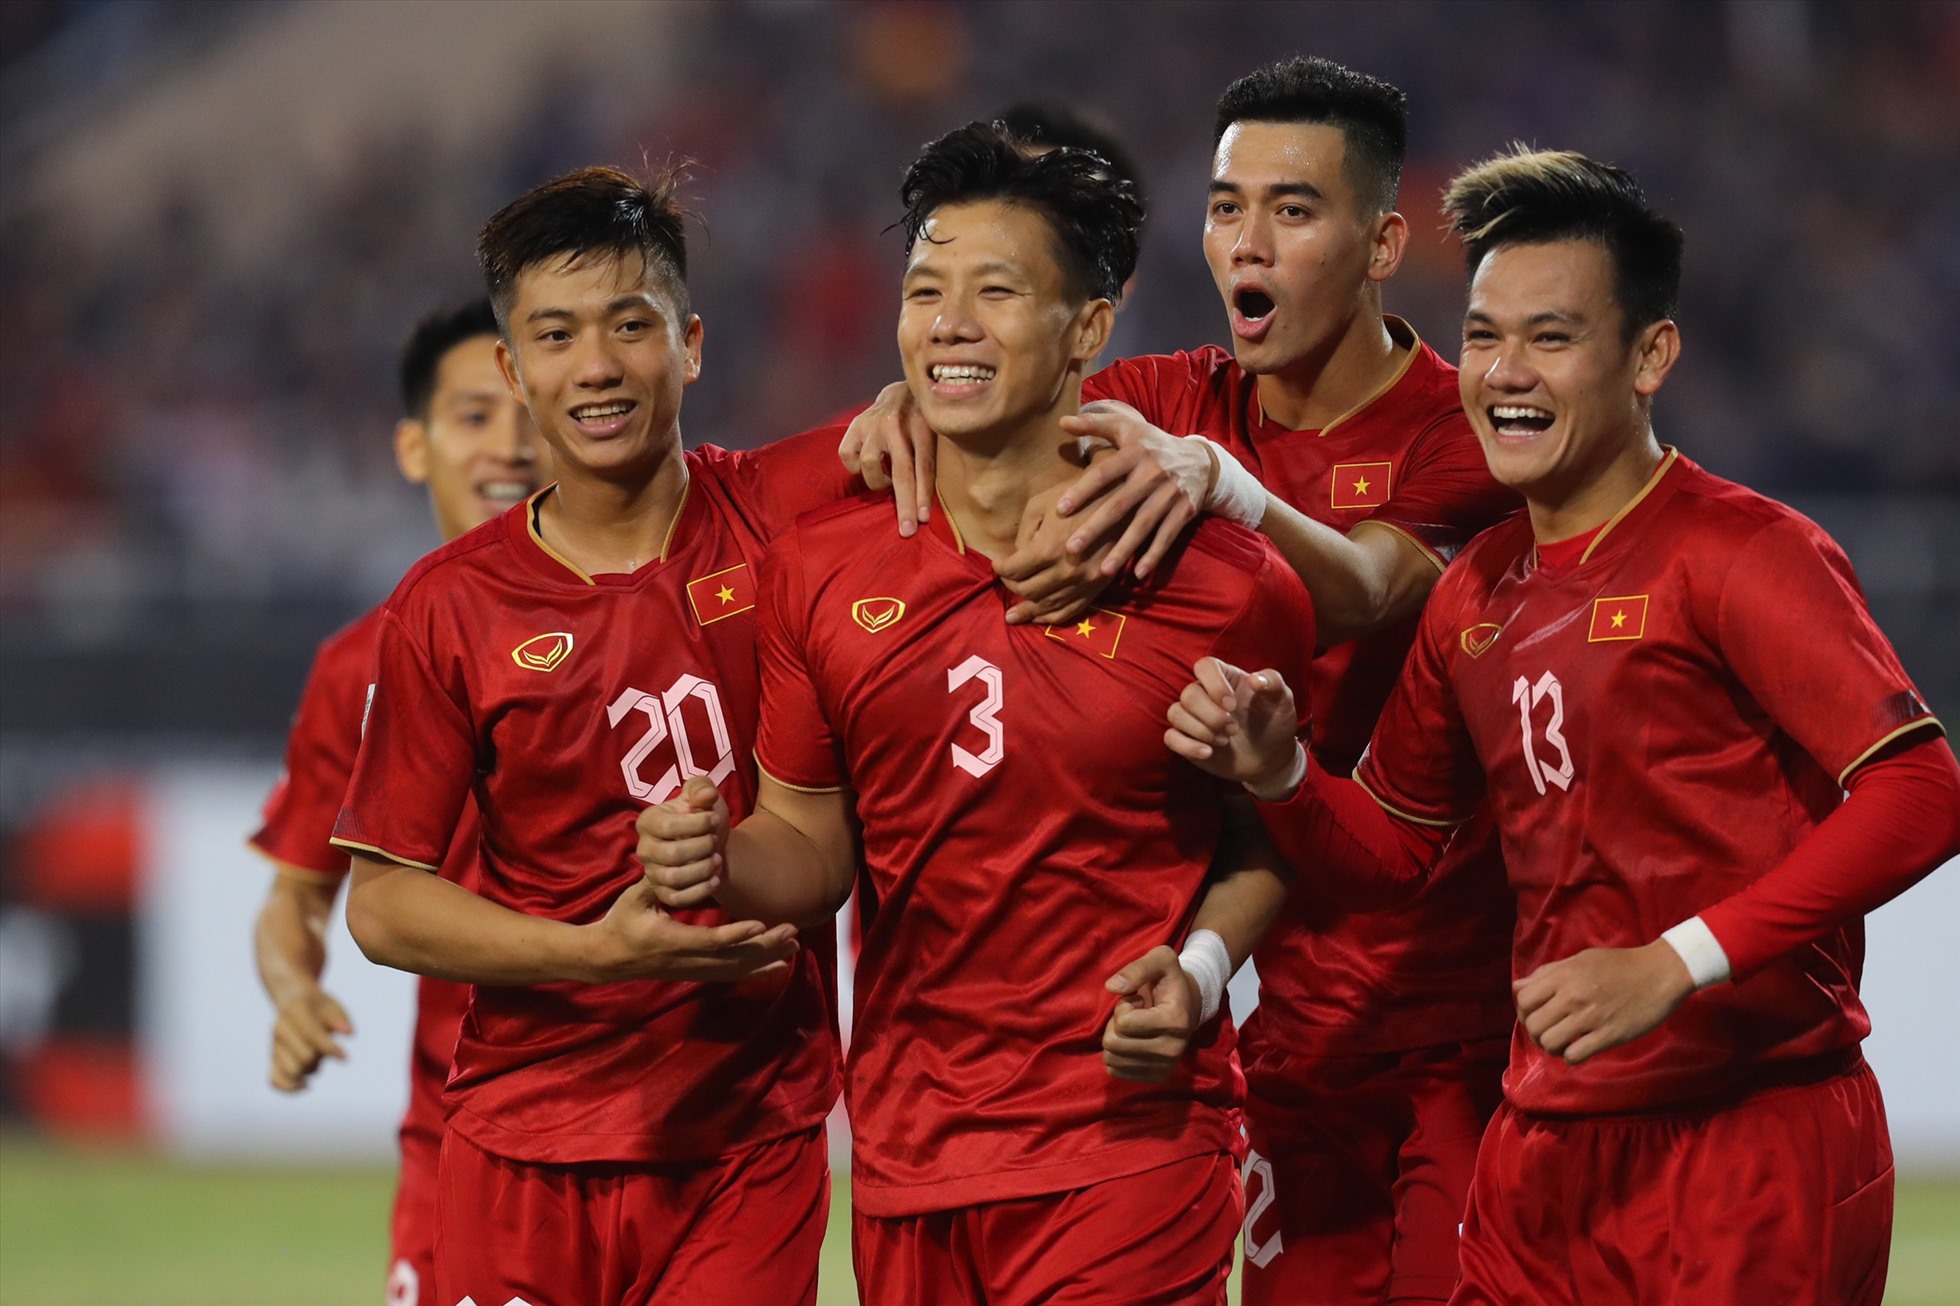 Với chiến thắng 3-0 trước Malaysia, đội tuyển Việt Nam đòi lại được ngôi đầu bảng B từ chính đối thủ và rộng cửa tiến vào bán kết AFF Cup 2022.